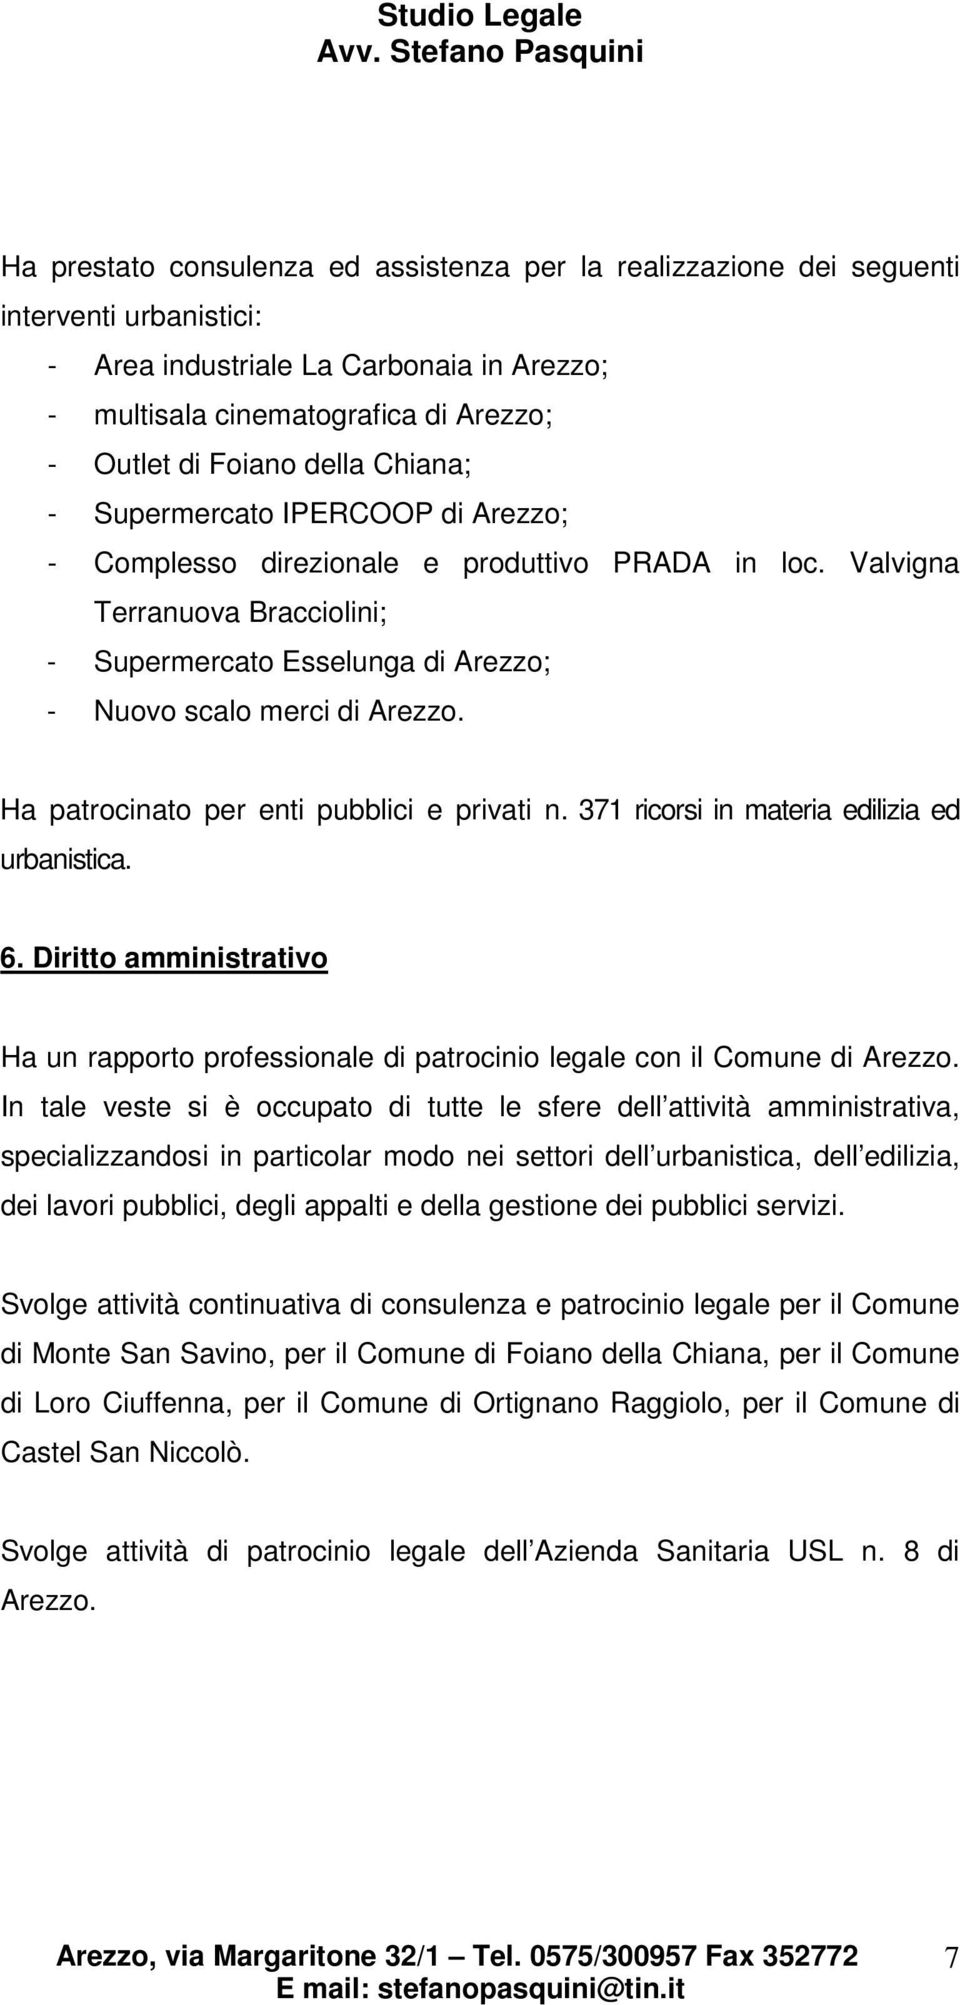 Ha patrocinato per enti pubblici e privati n. 371 ricorsi in materia edilizia ed urbanistica. 6. Diritto amministrativo Ha un rapporto professionale di patrocinio legale con il Comune di Arezzo.